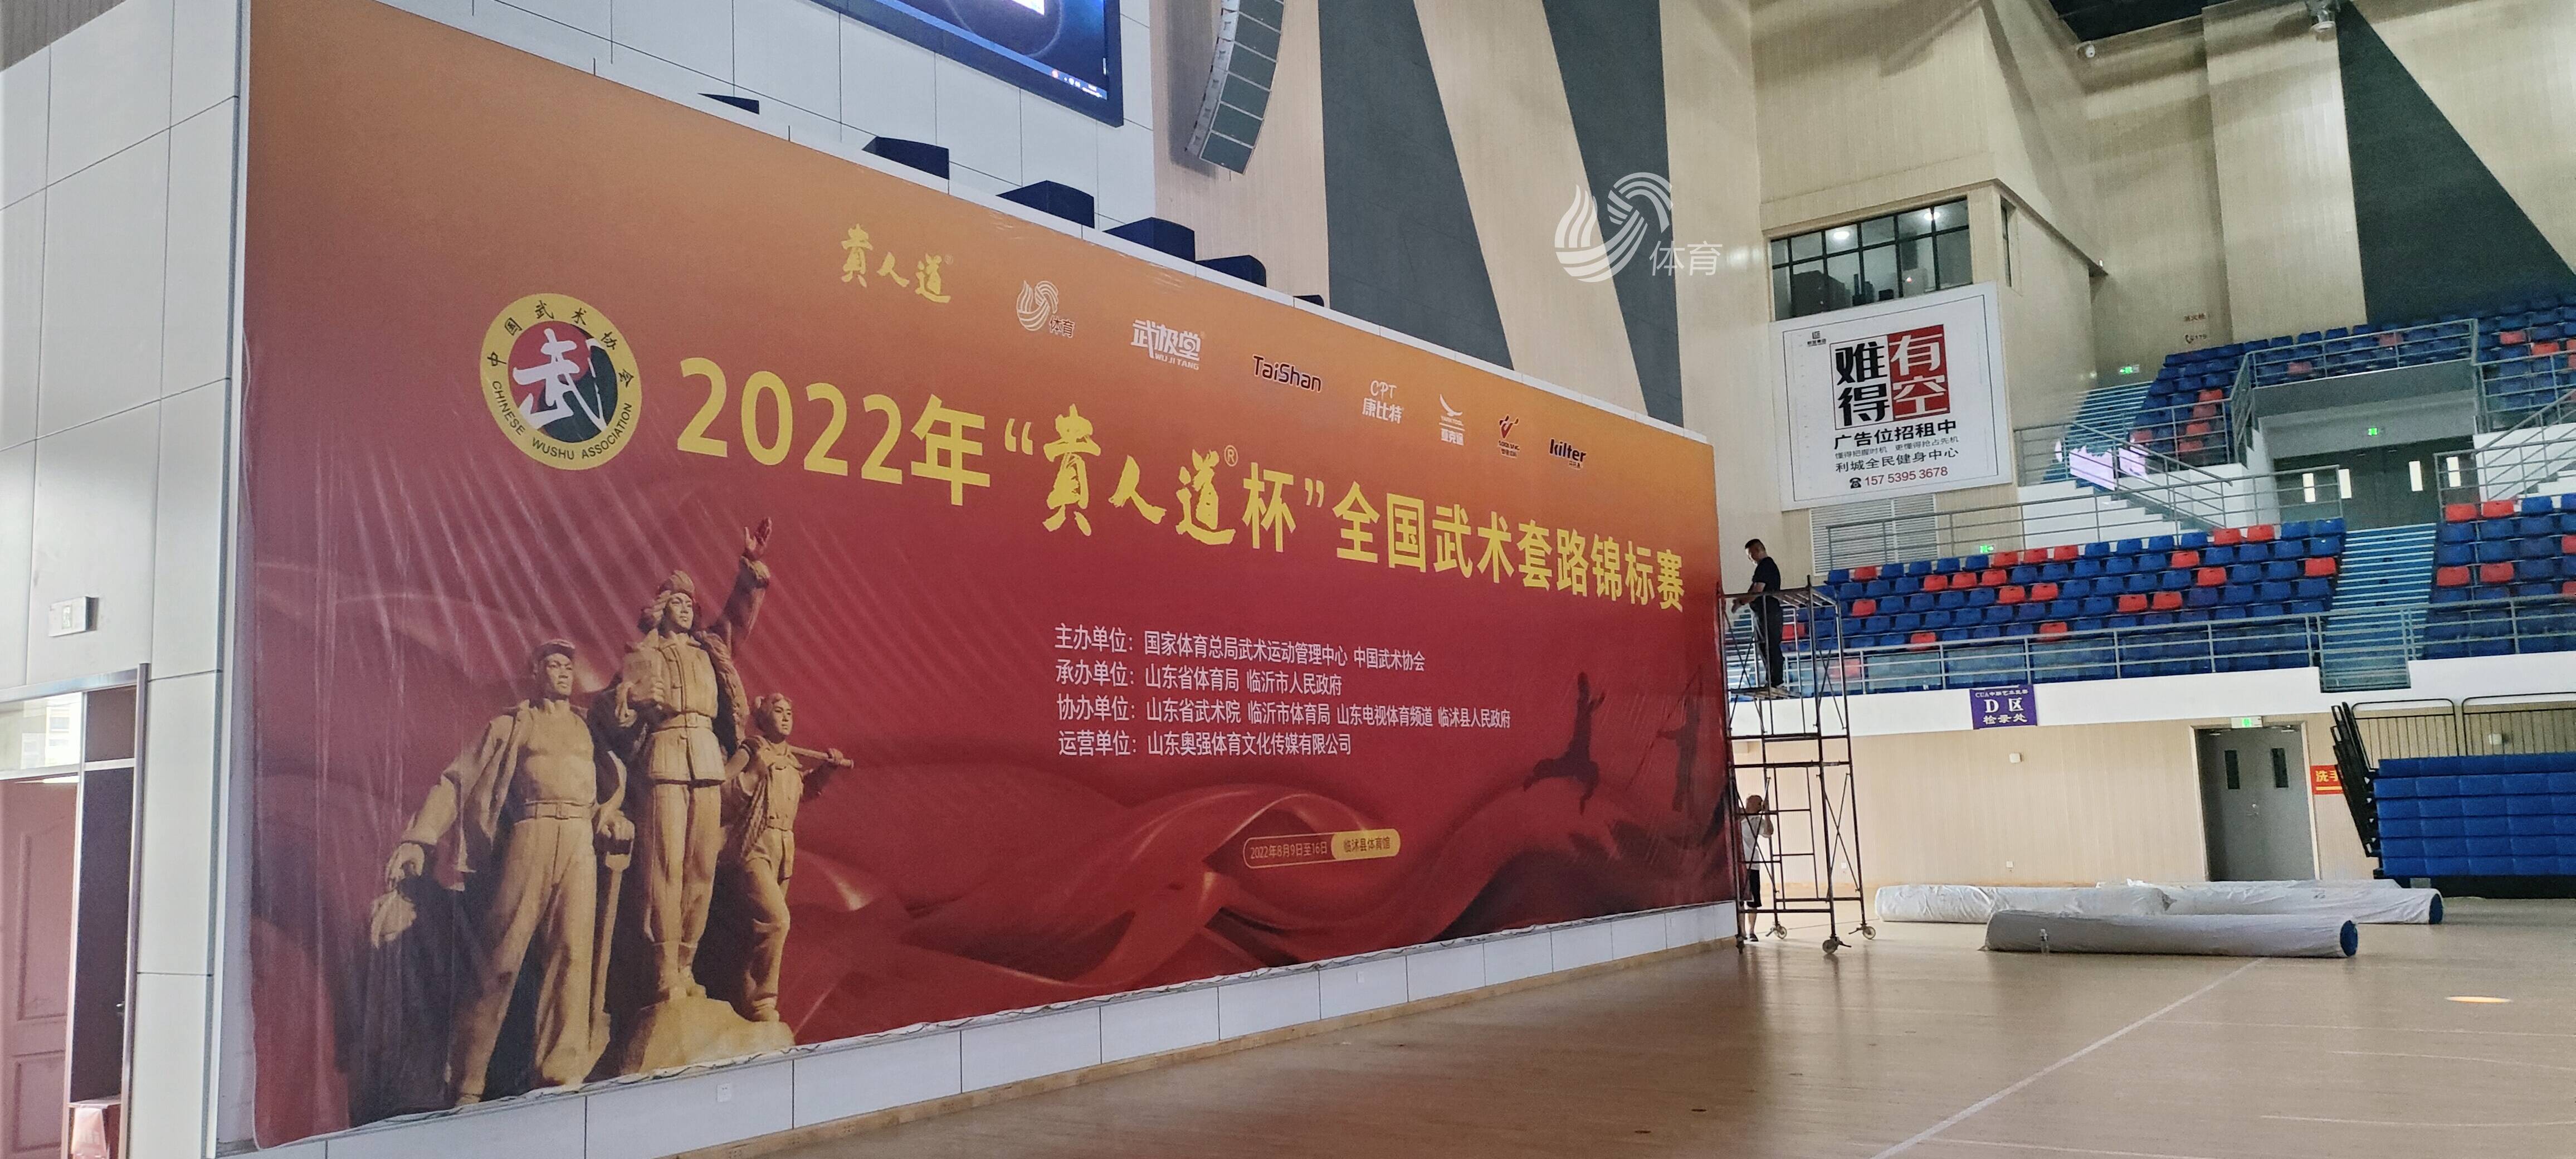 2022年“贵人道杯”全国武术套路锦标赛开幕在即，场馆设施抢先看